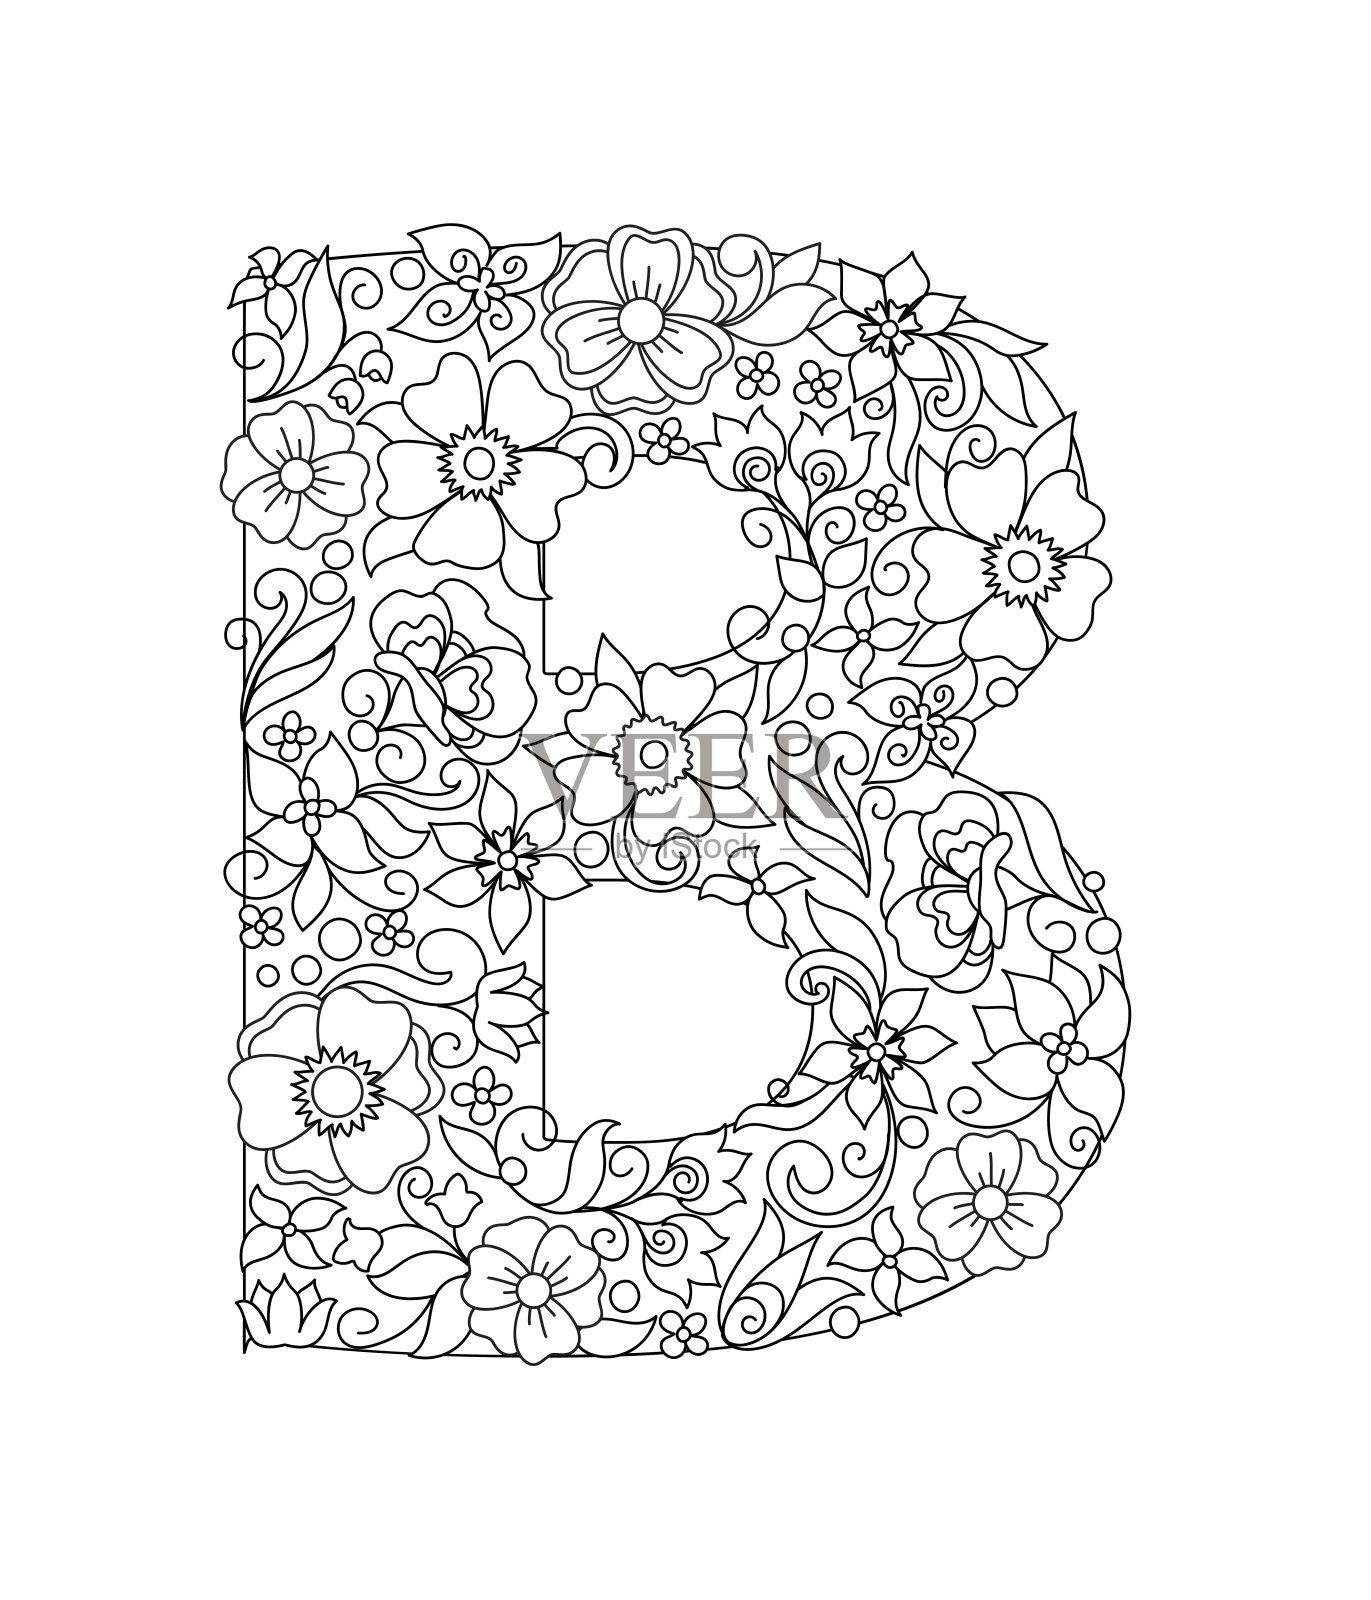 大写字母B与抽象的花图案设计元素图片